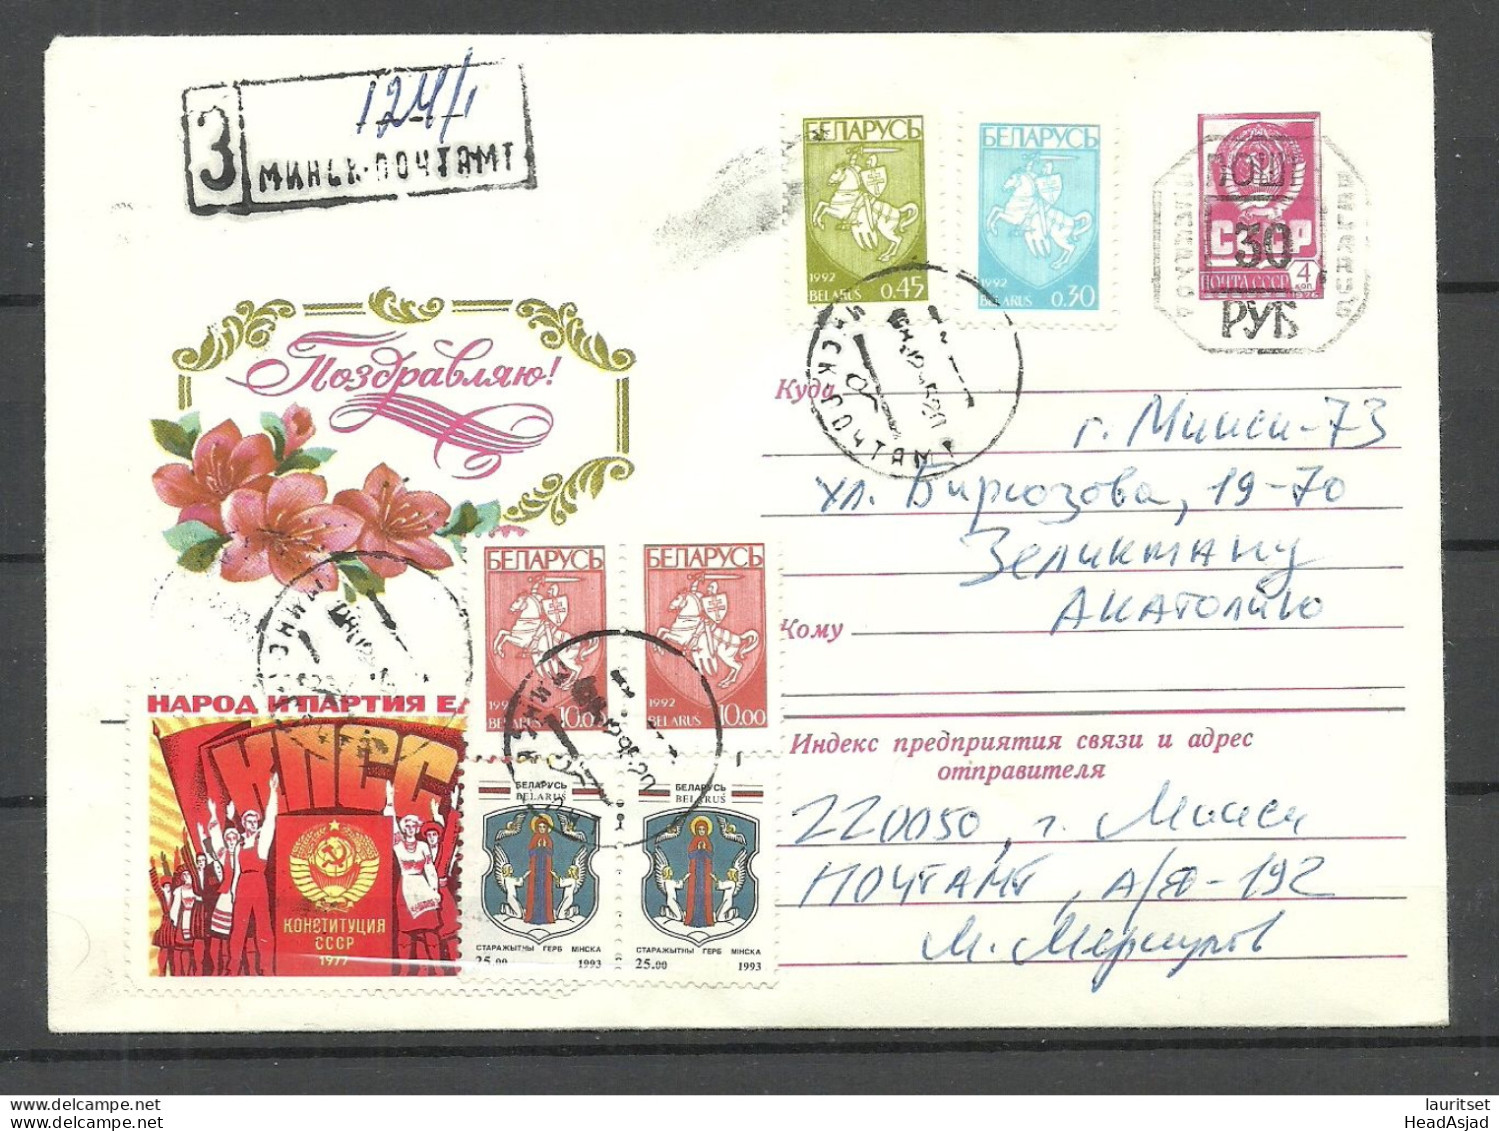 Belarus Weissrussland 1994 Postal Stationery Provisional Hand-stamp Overprint Registered Letter - Belarus